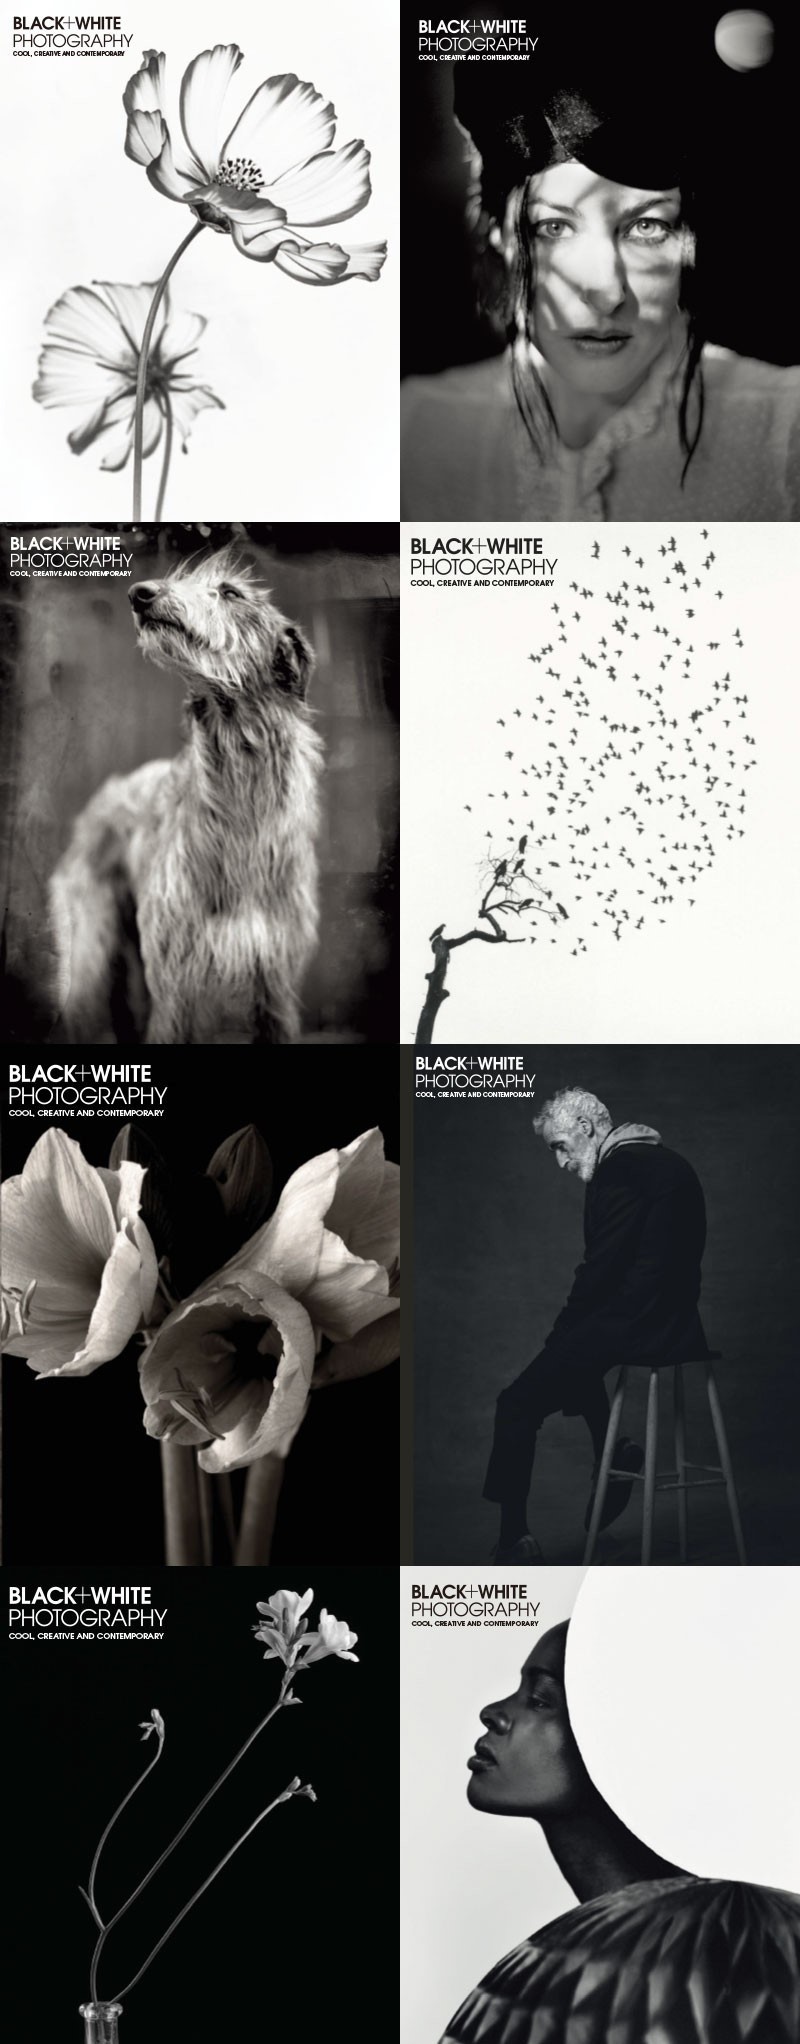 黑白摄影BLACK+WHITE PHOTOGRAPHY 2020 [1月-8月+秋季特刊] 摄影 第1张